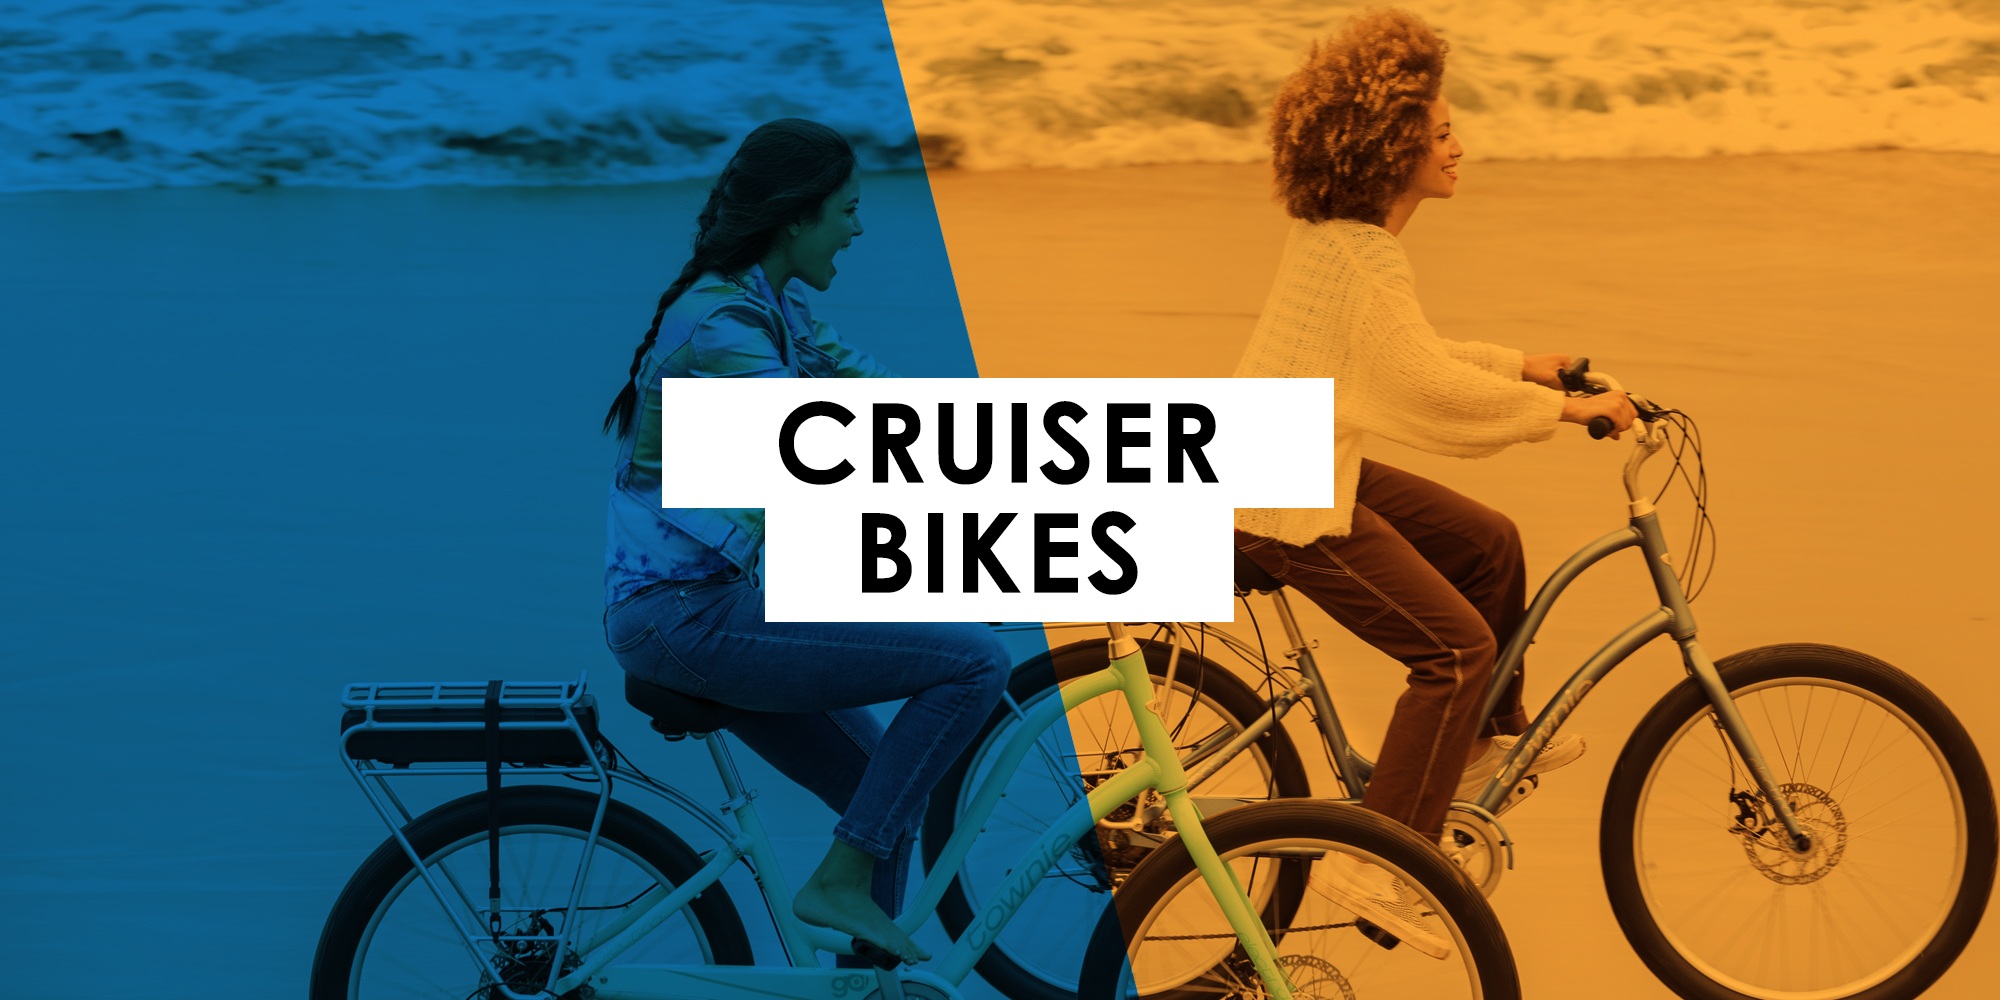 Shop Cruiser Bikes at Bikes Palm Beach in Juno Beach Florida